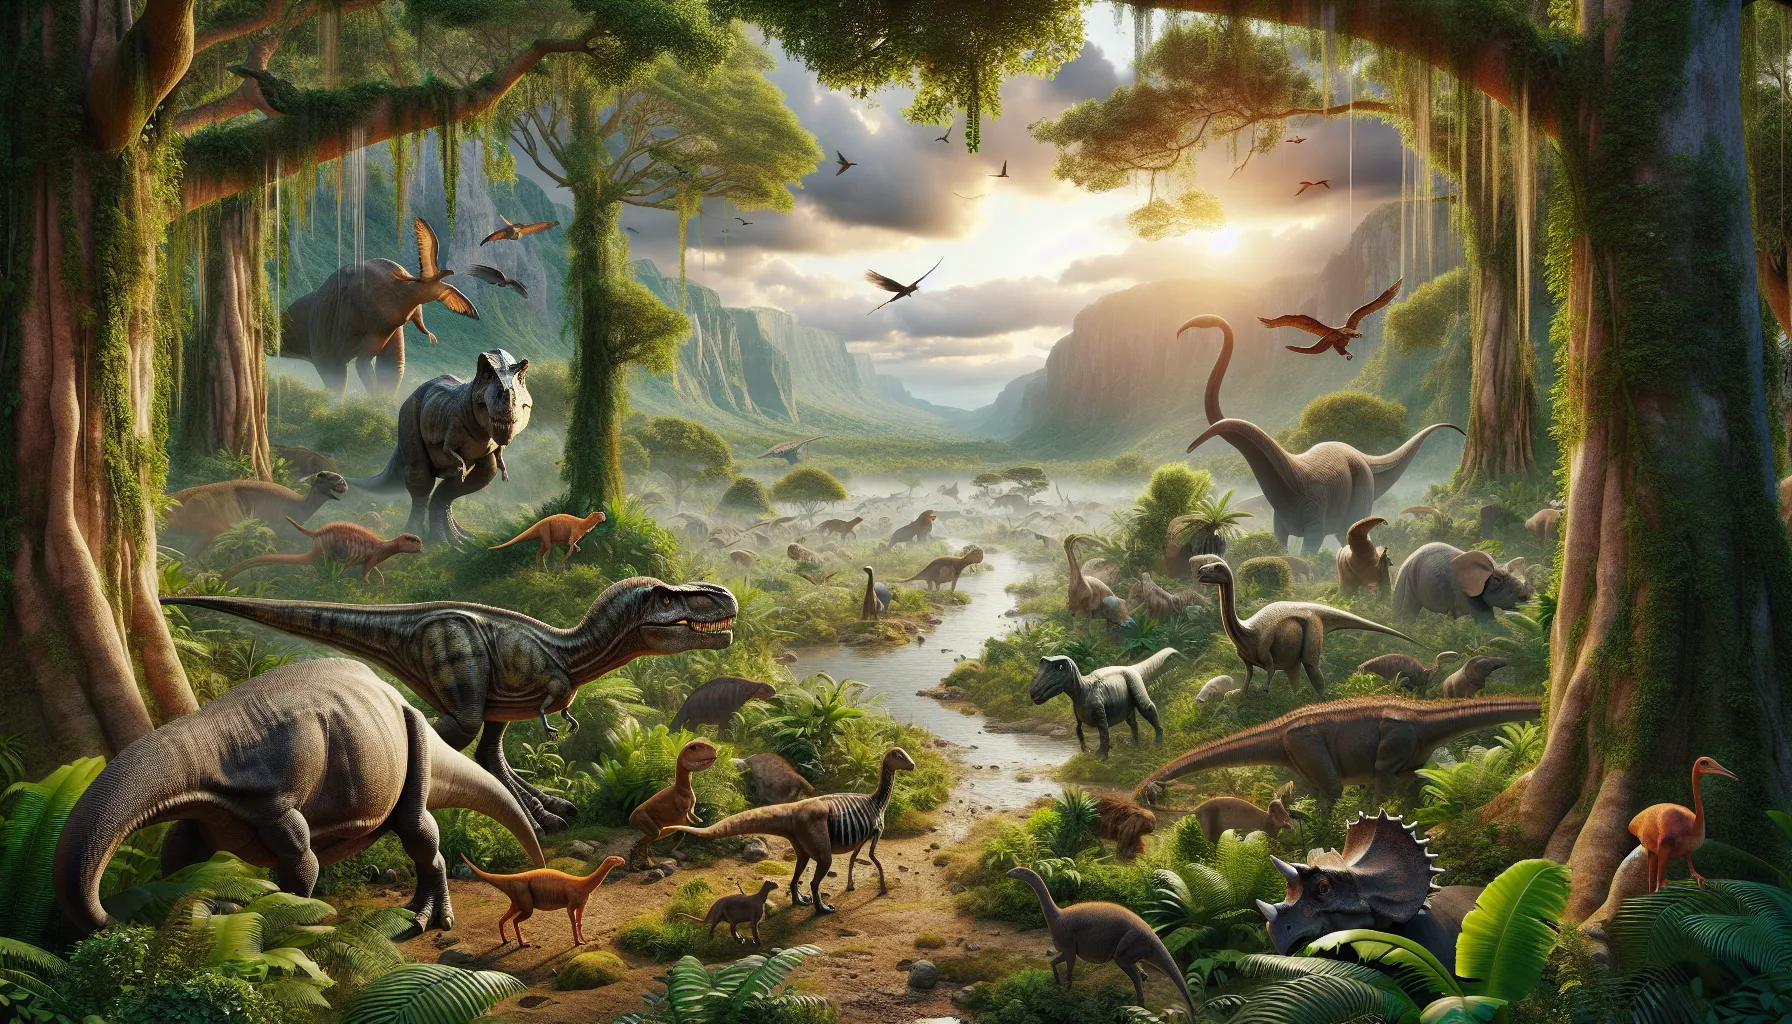 Representación artística de dinosaurios en un paisaje bíblico rodeado de vegetación y animales